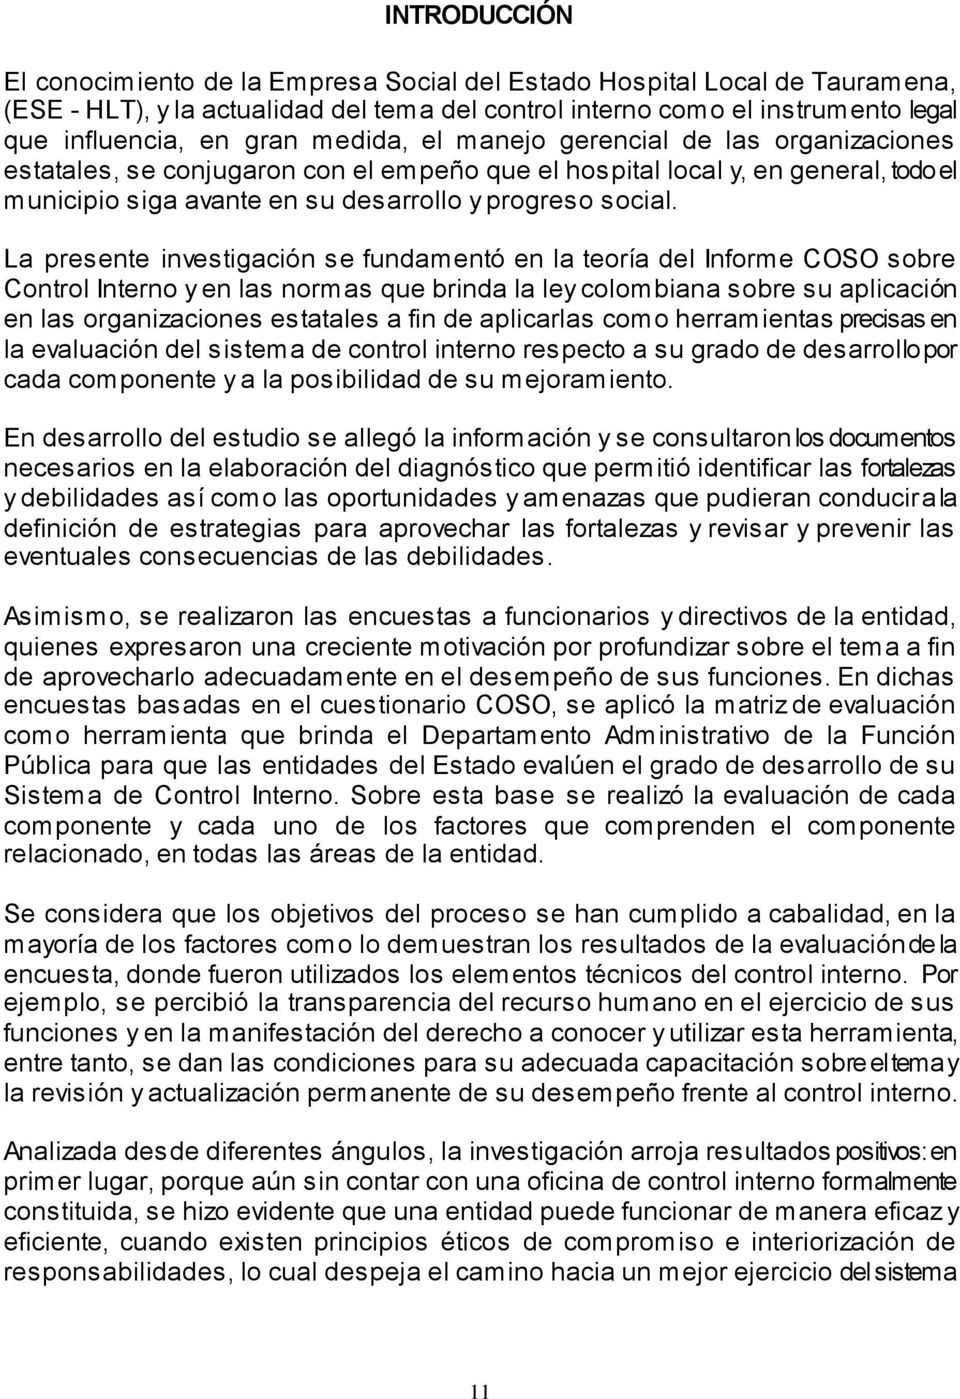 La presente investigación se fundamentó en la teoría del Informe COSO sobre Control Interno y en las normas que brinda la ley colombiana sobre su aplicación en las organizaciones estatales a fin de